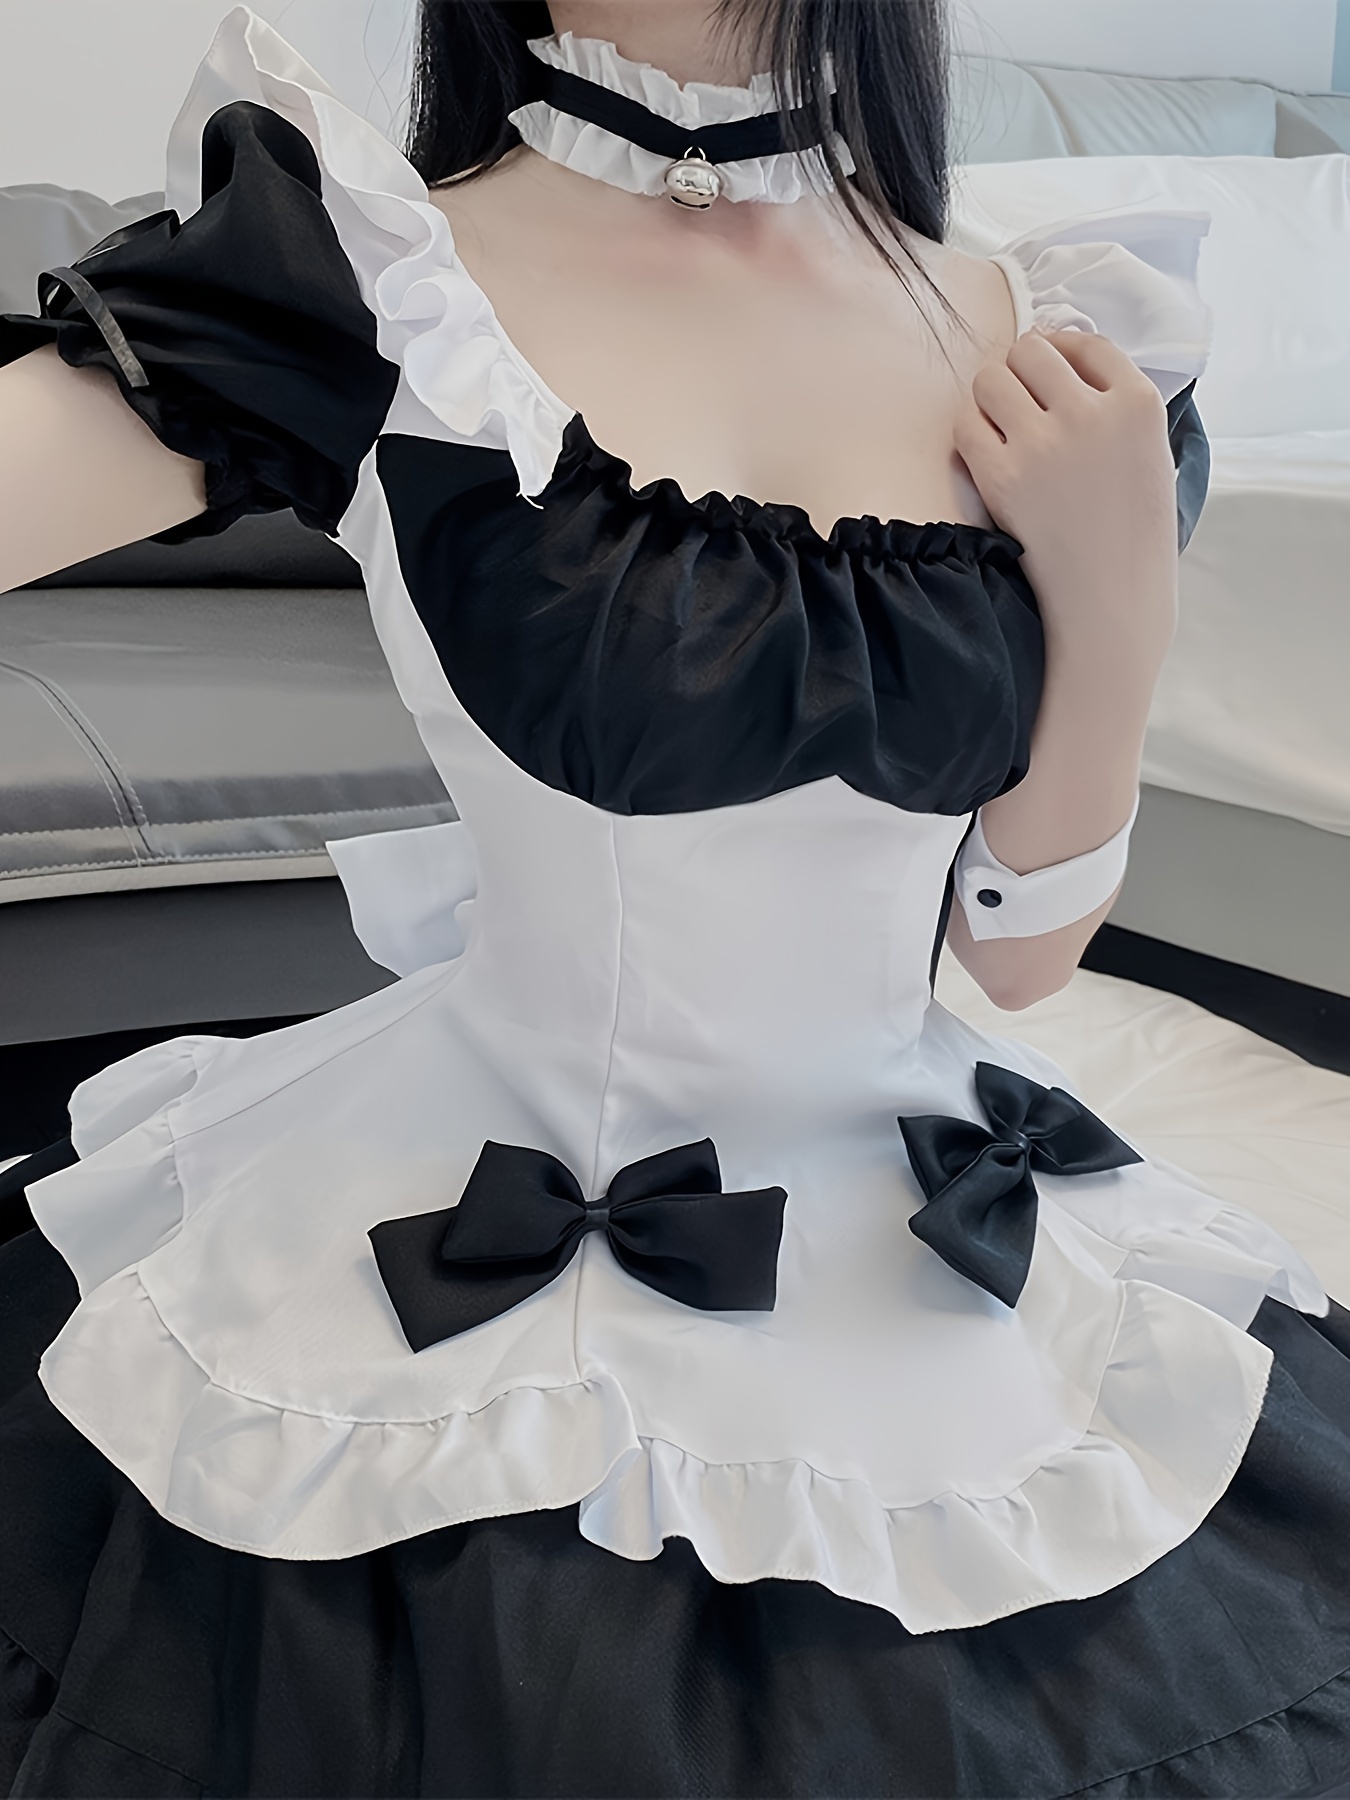 Black White Lingerie: Maid Costume, Harness Lingerie, Bralette, Garter  Belt, BDSM Lingerie, Body Harness Plus Size Lingerie Cut Out Lingerie -   Canada